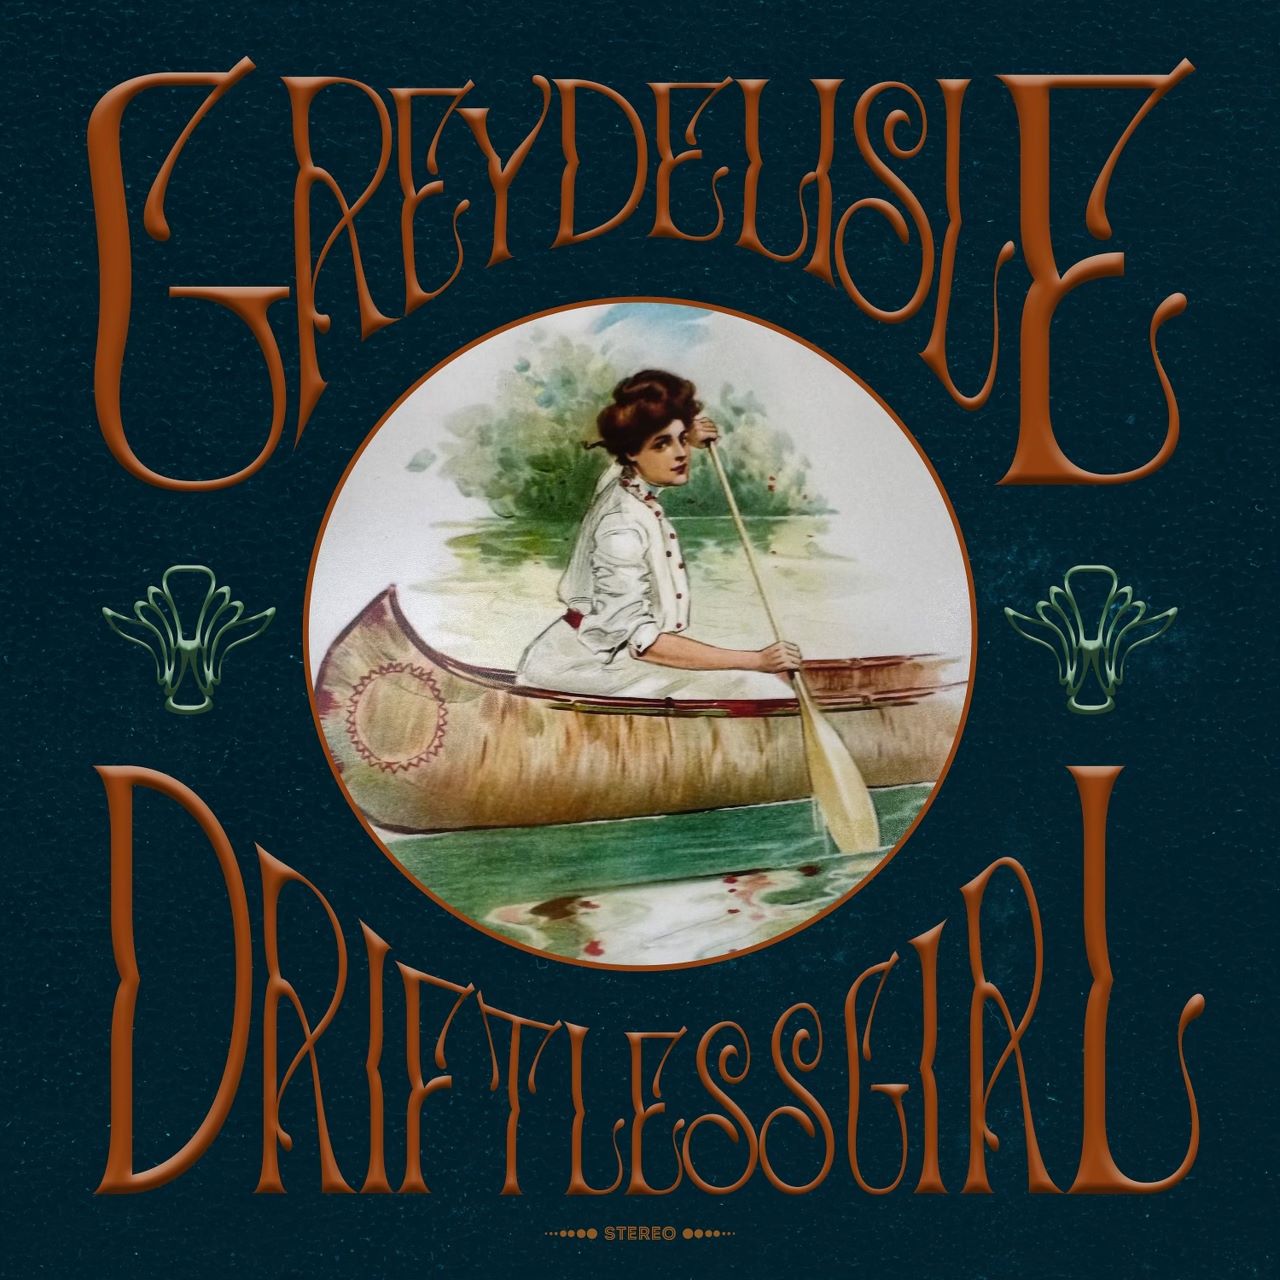 Grey DeLisle – Driftless Girl cover album